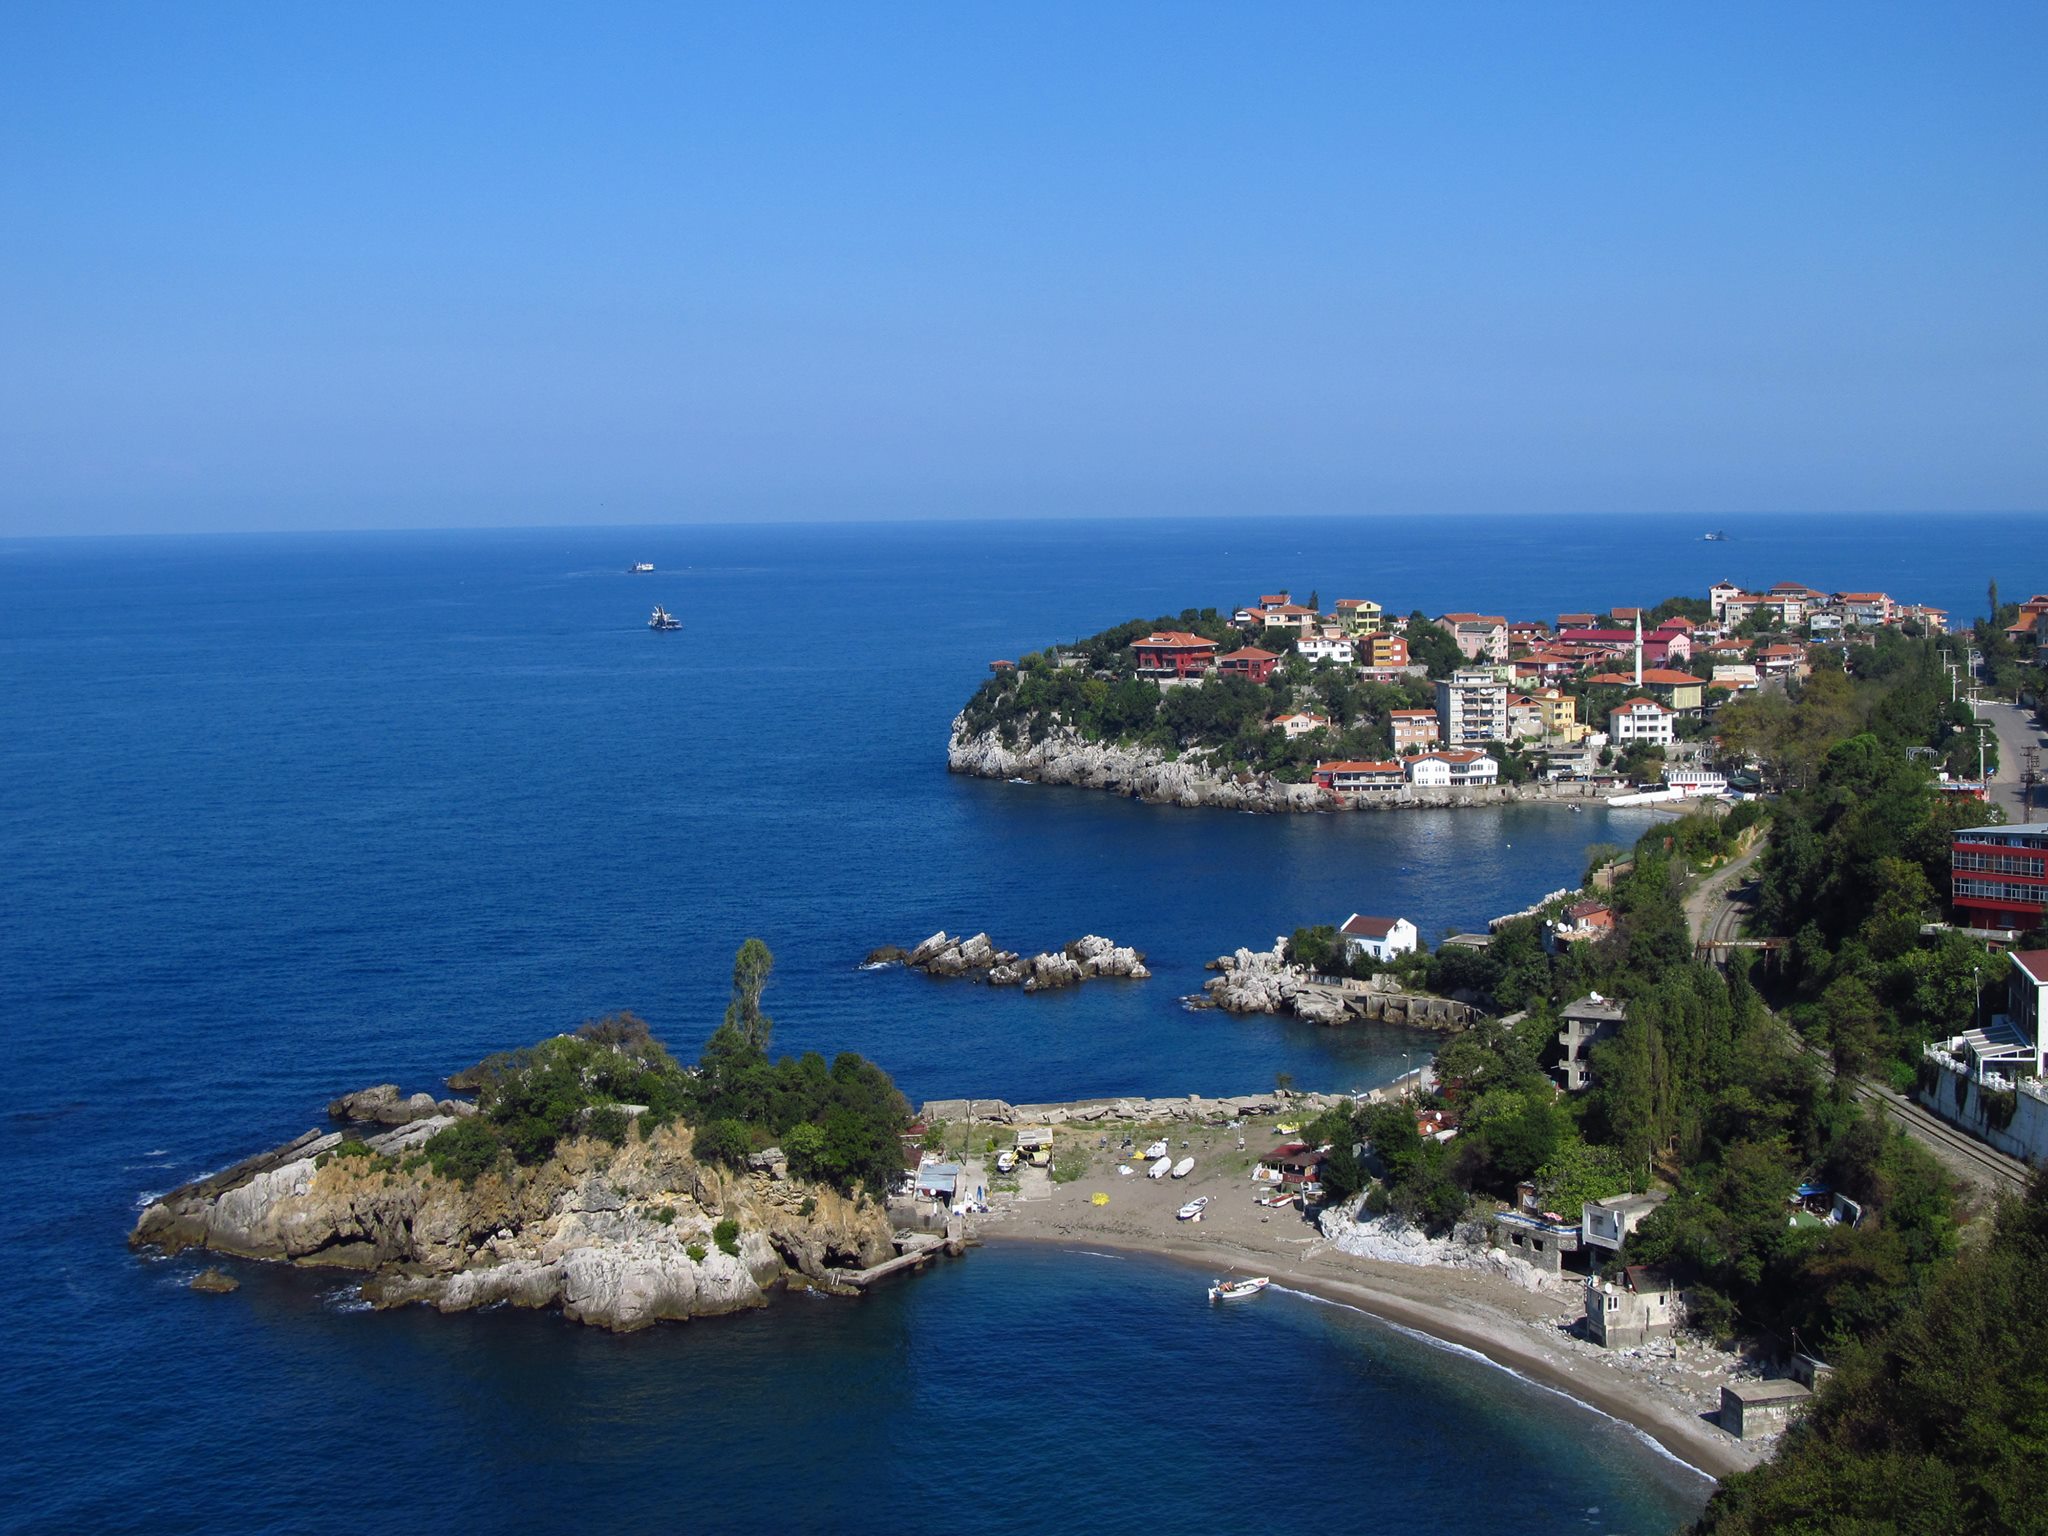 «Волощук і мандри: пішки навколо Чорного моря» - випуск №9: перші проблеми зі здоров’ям